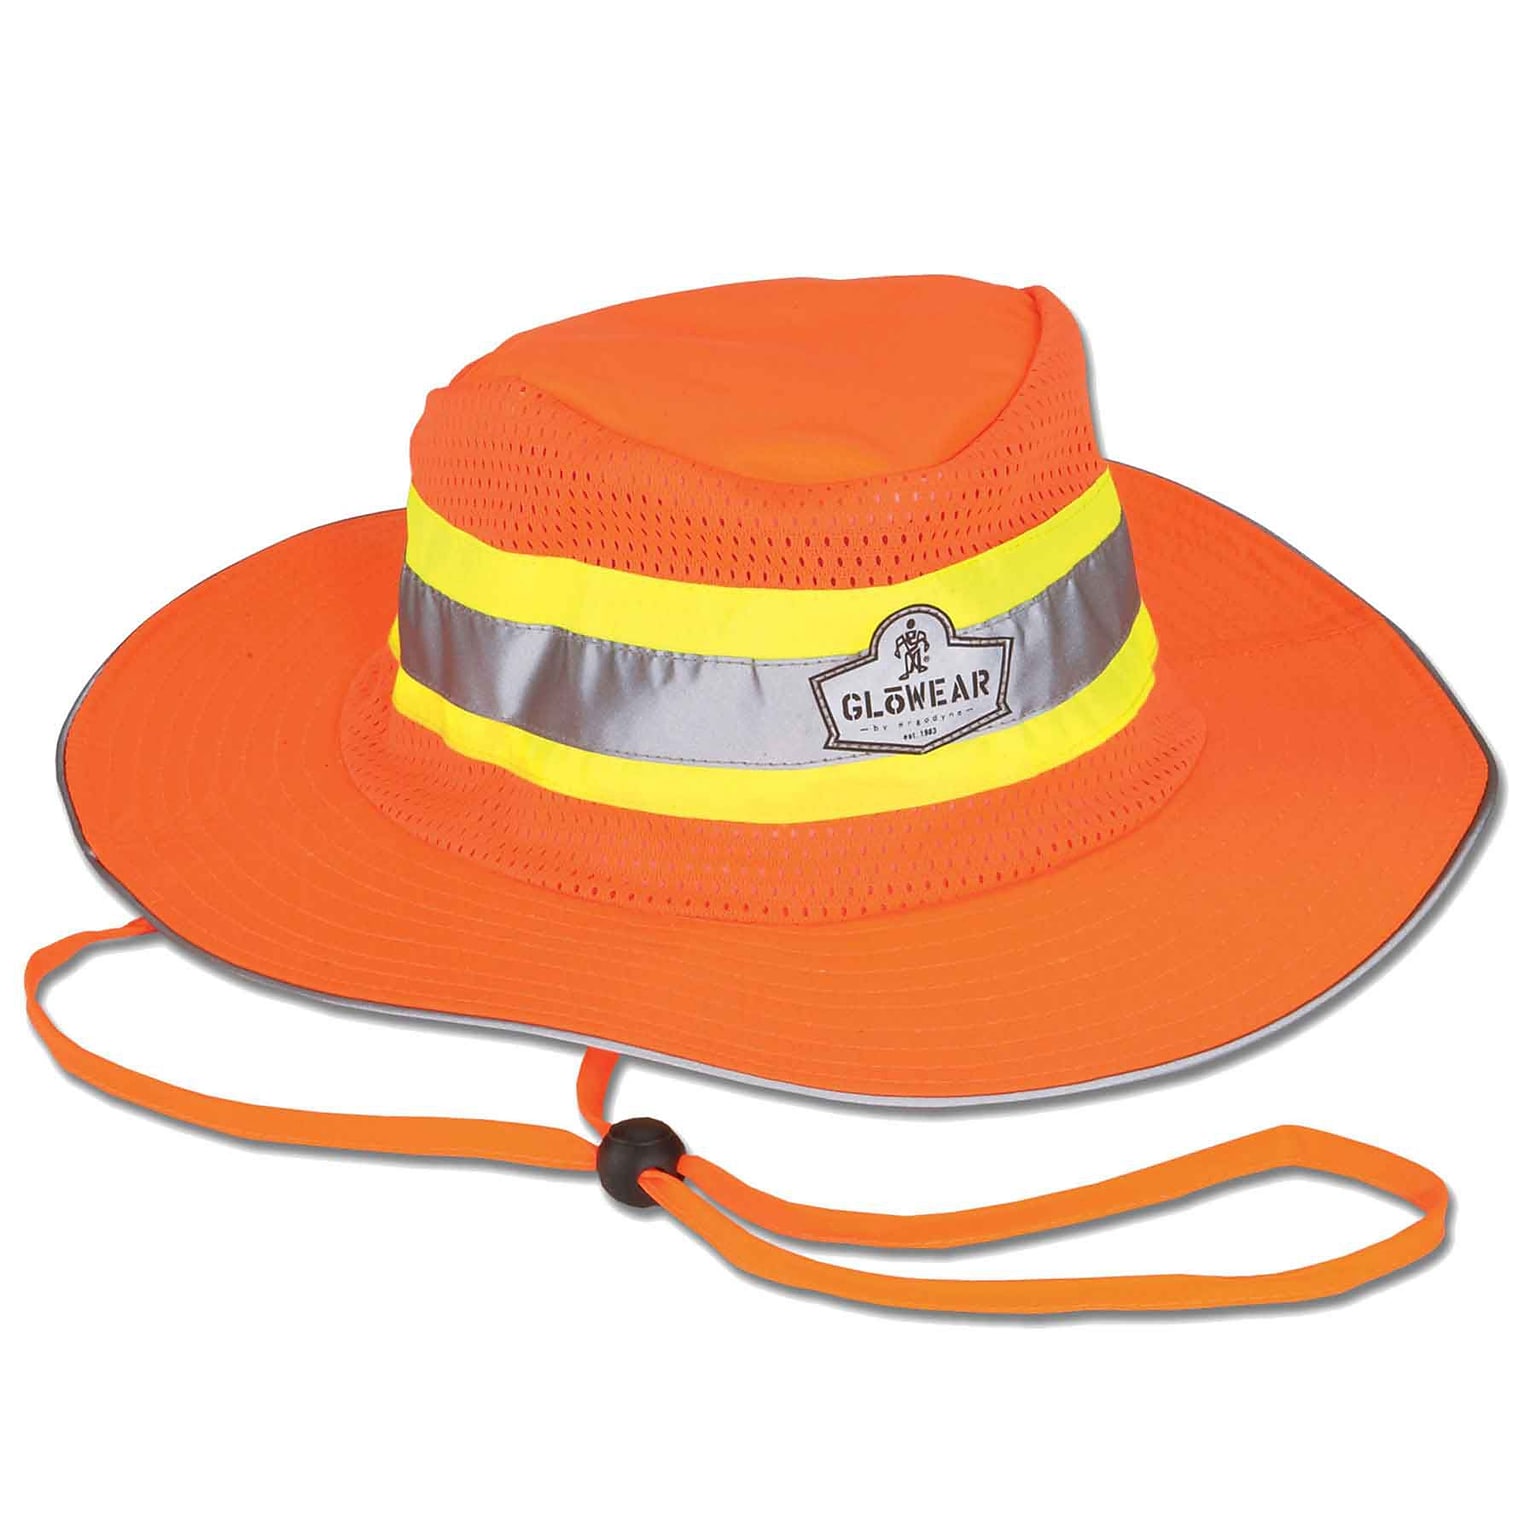 Ergodyne GloWear 8935 Cooling High Visibility Sun Hat, Orange, Extra Large (23262)